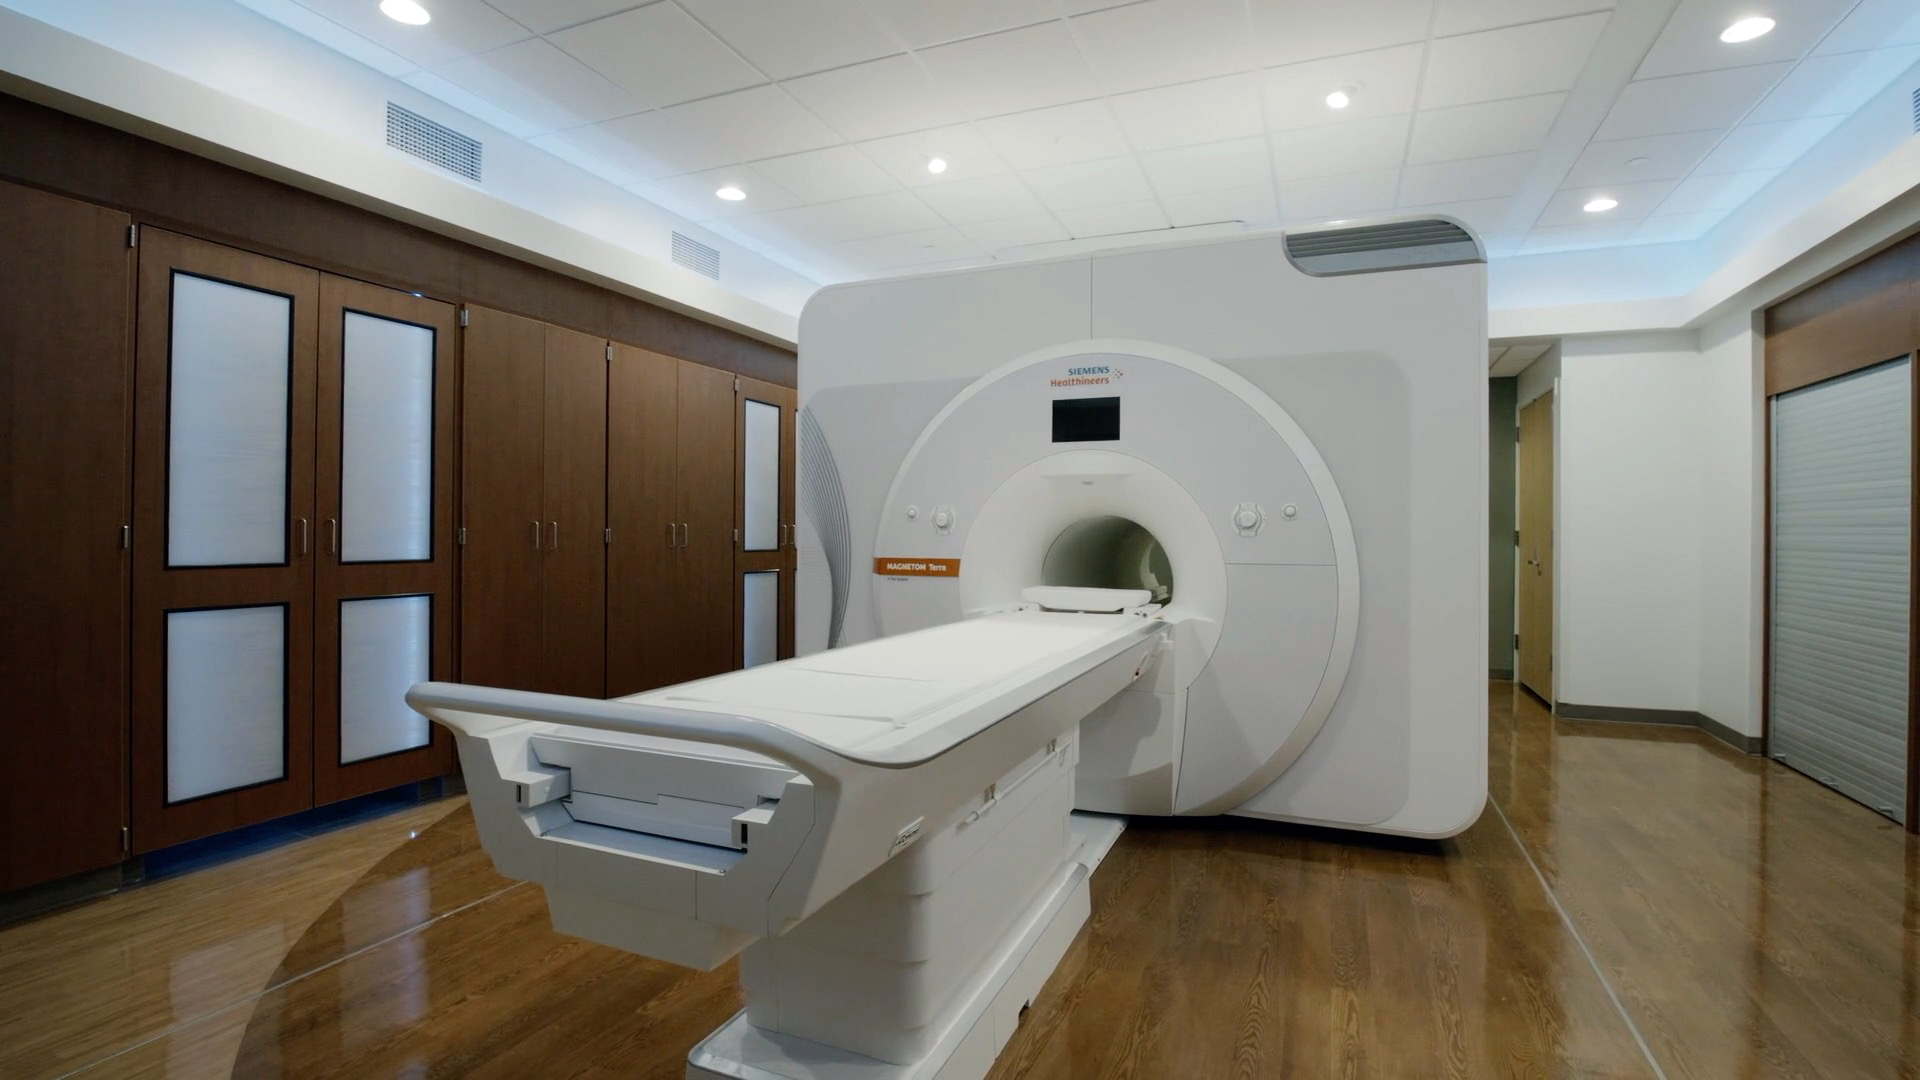 7 Tesla MRI scanner